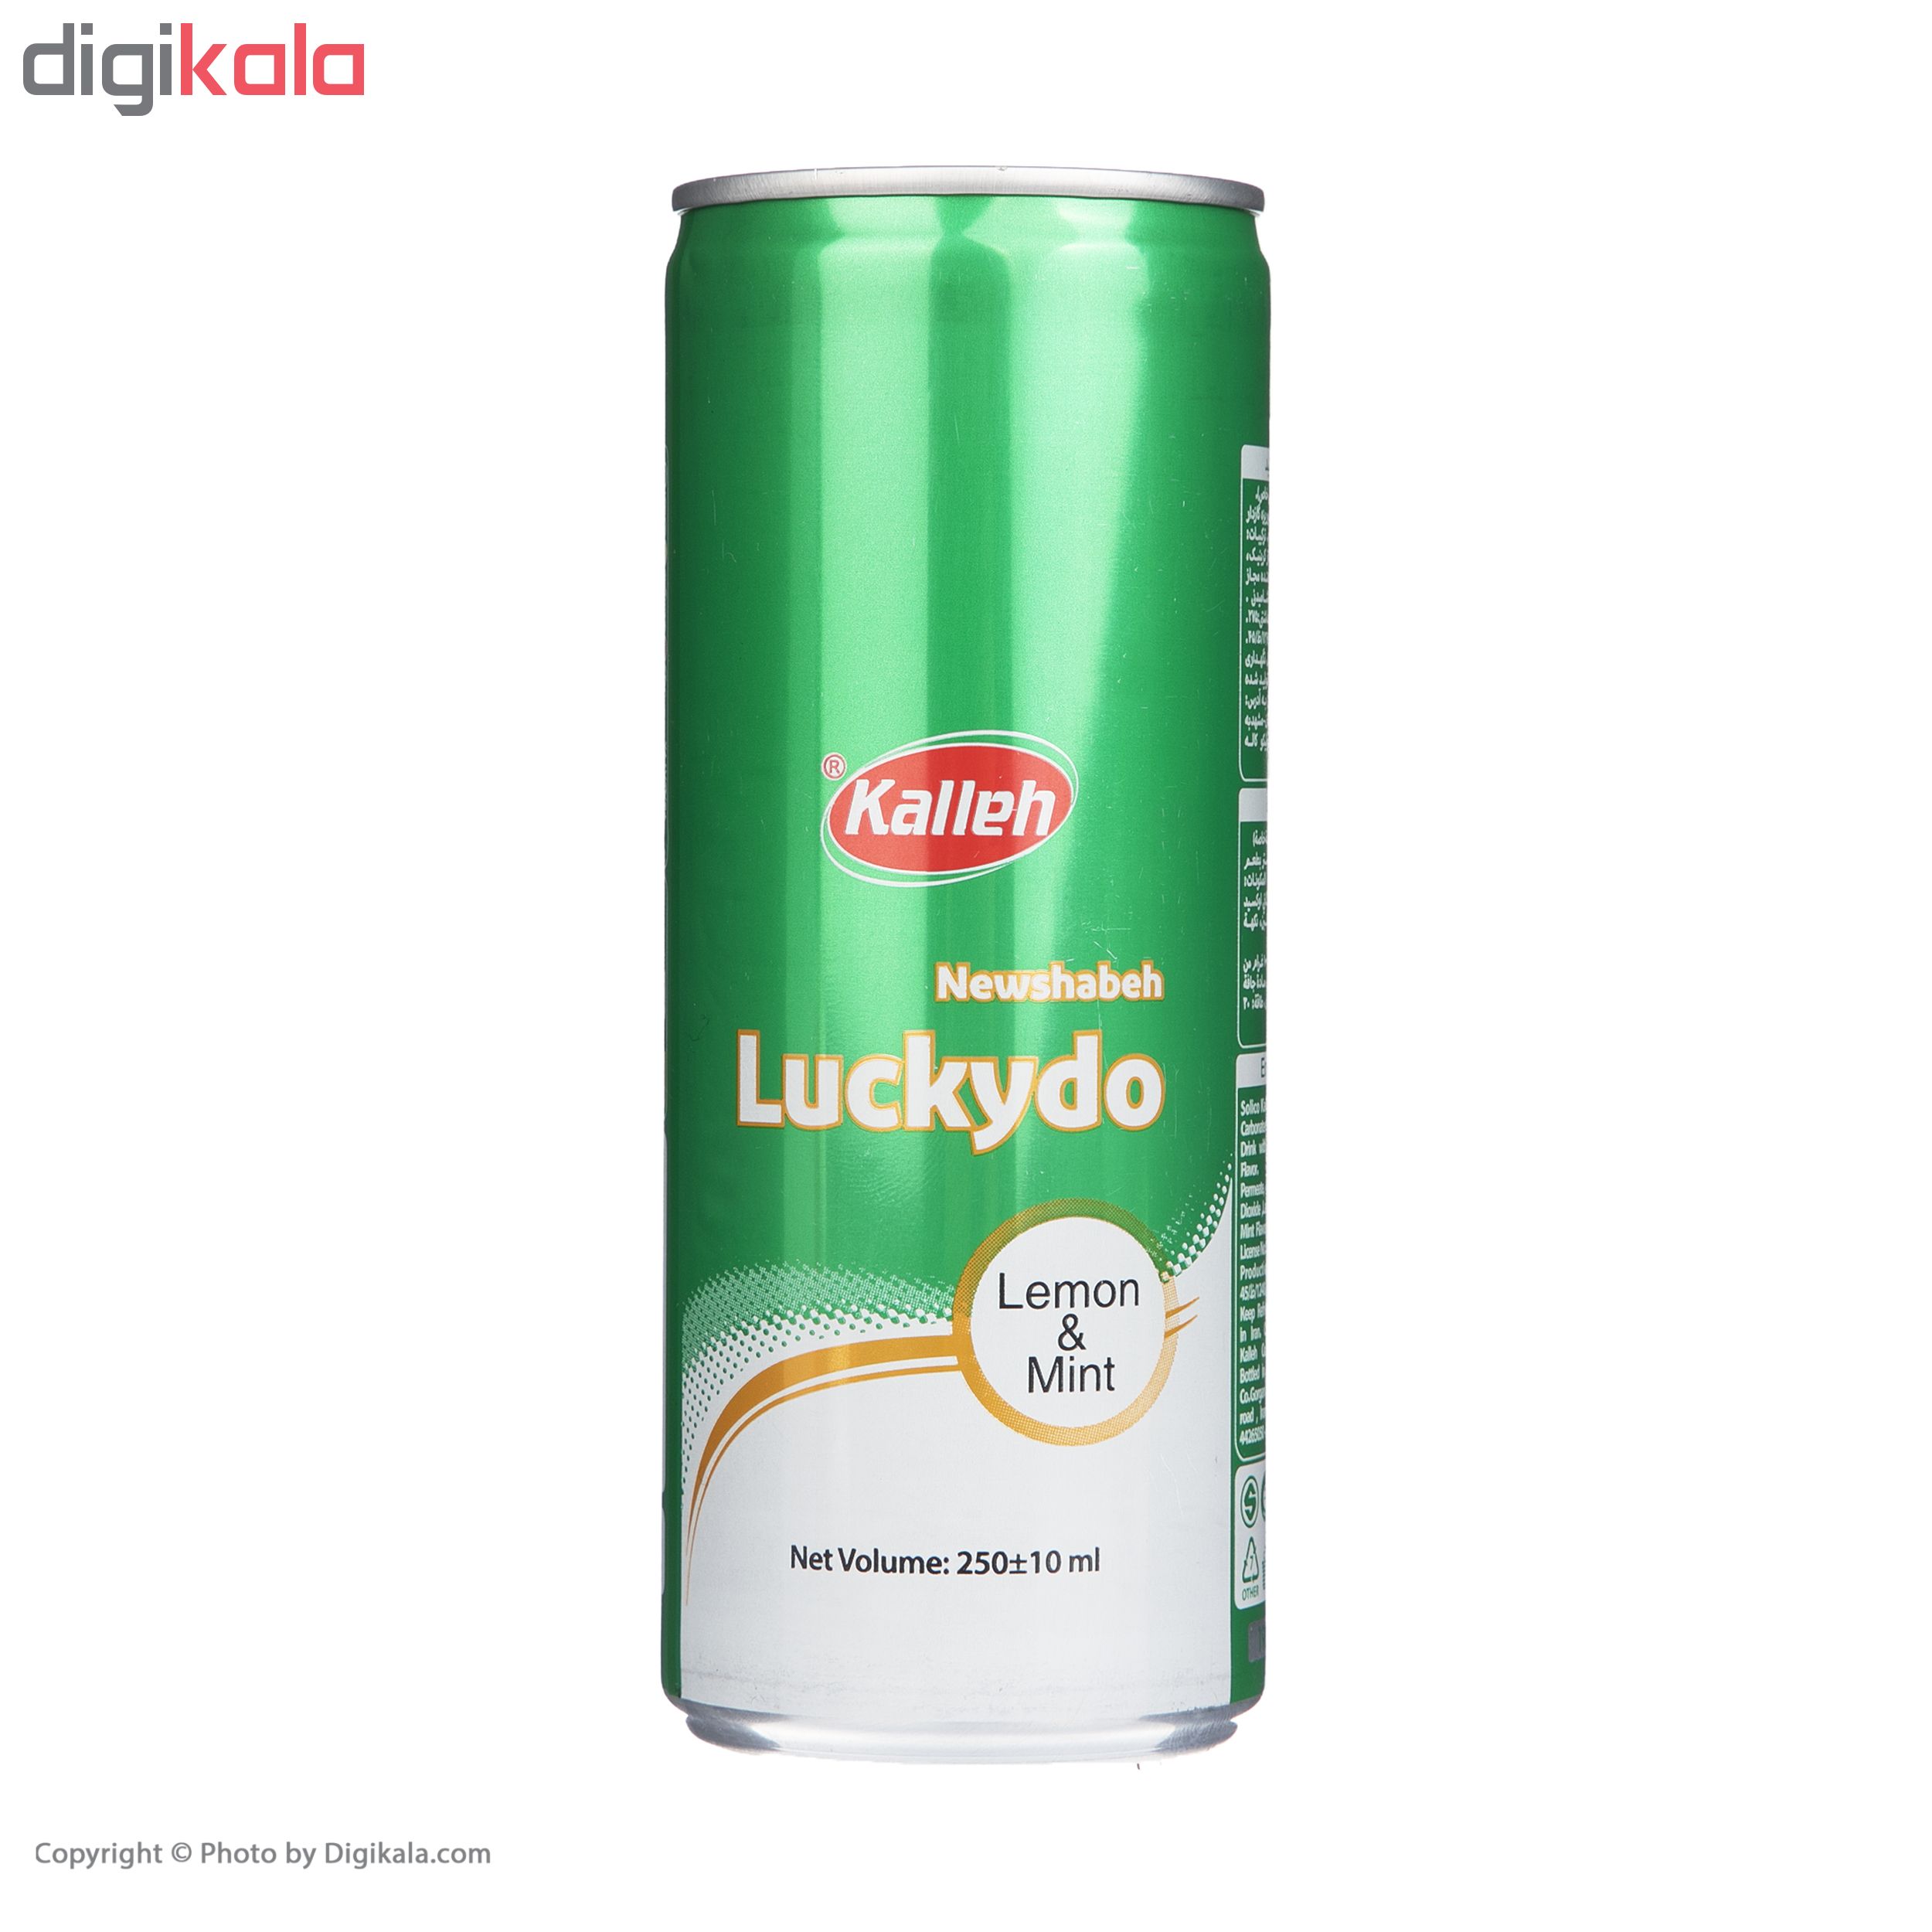 نوشیدنی لاکیدو کاله با طعم لیمو نعنا - 250 میلی لیتر